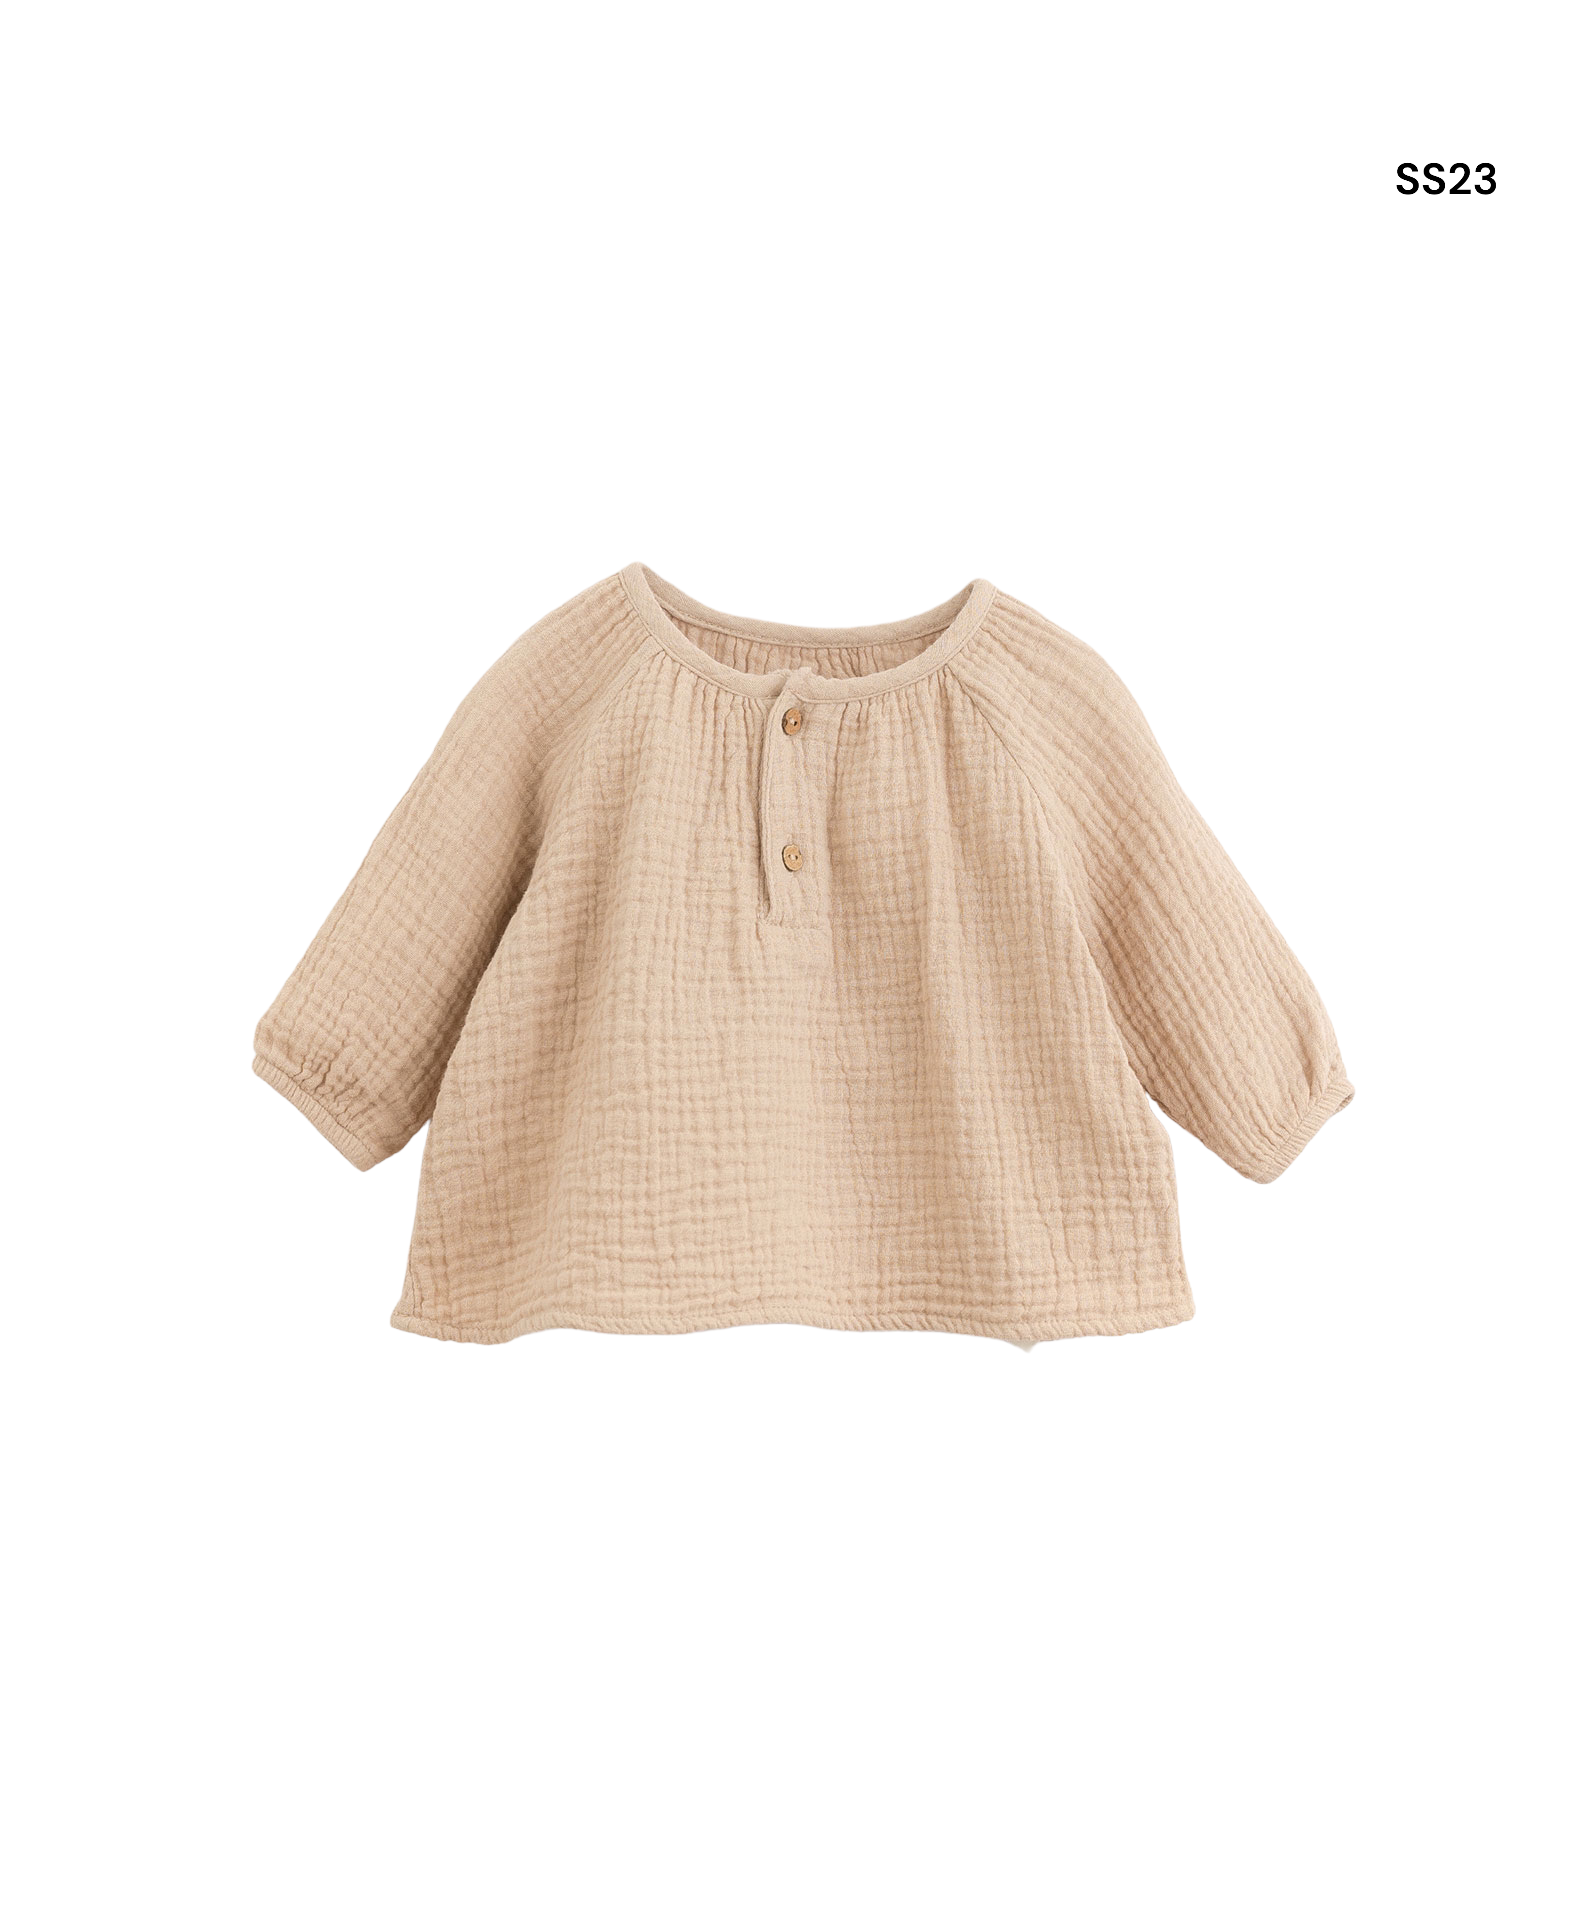 Maglia/camicia cipria per neonata